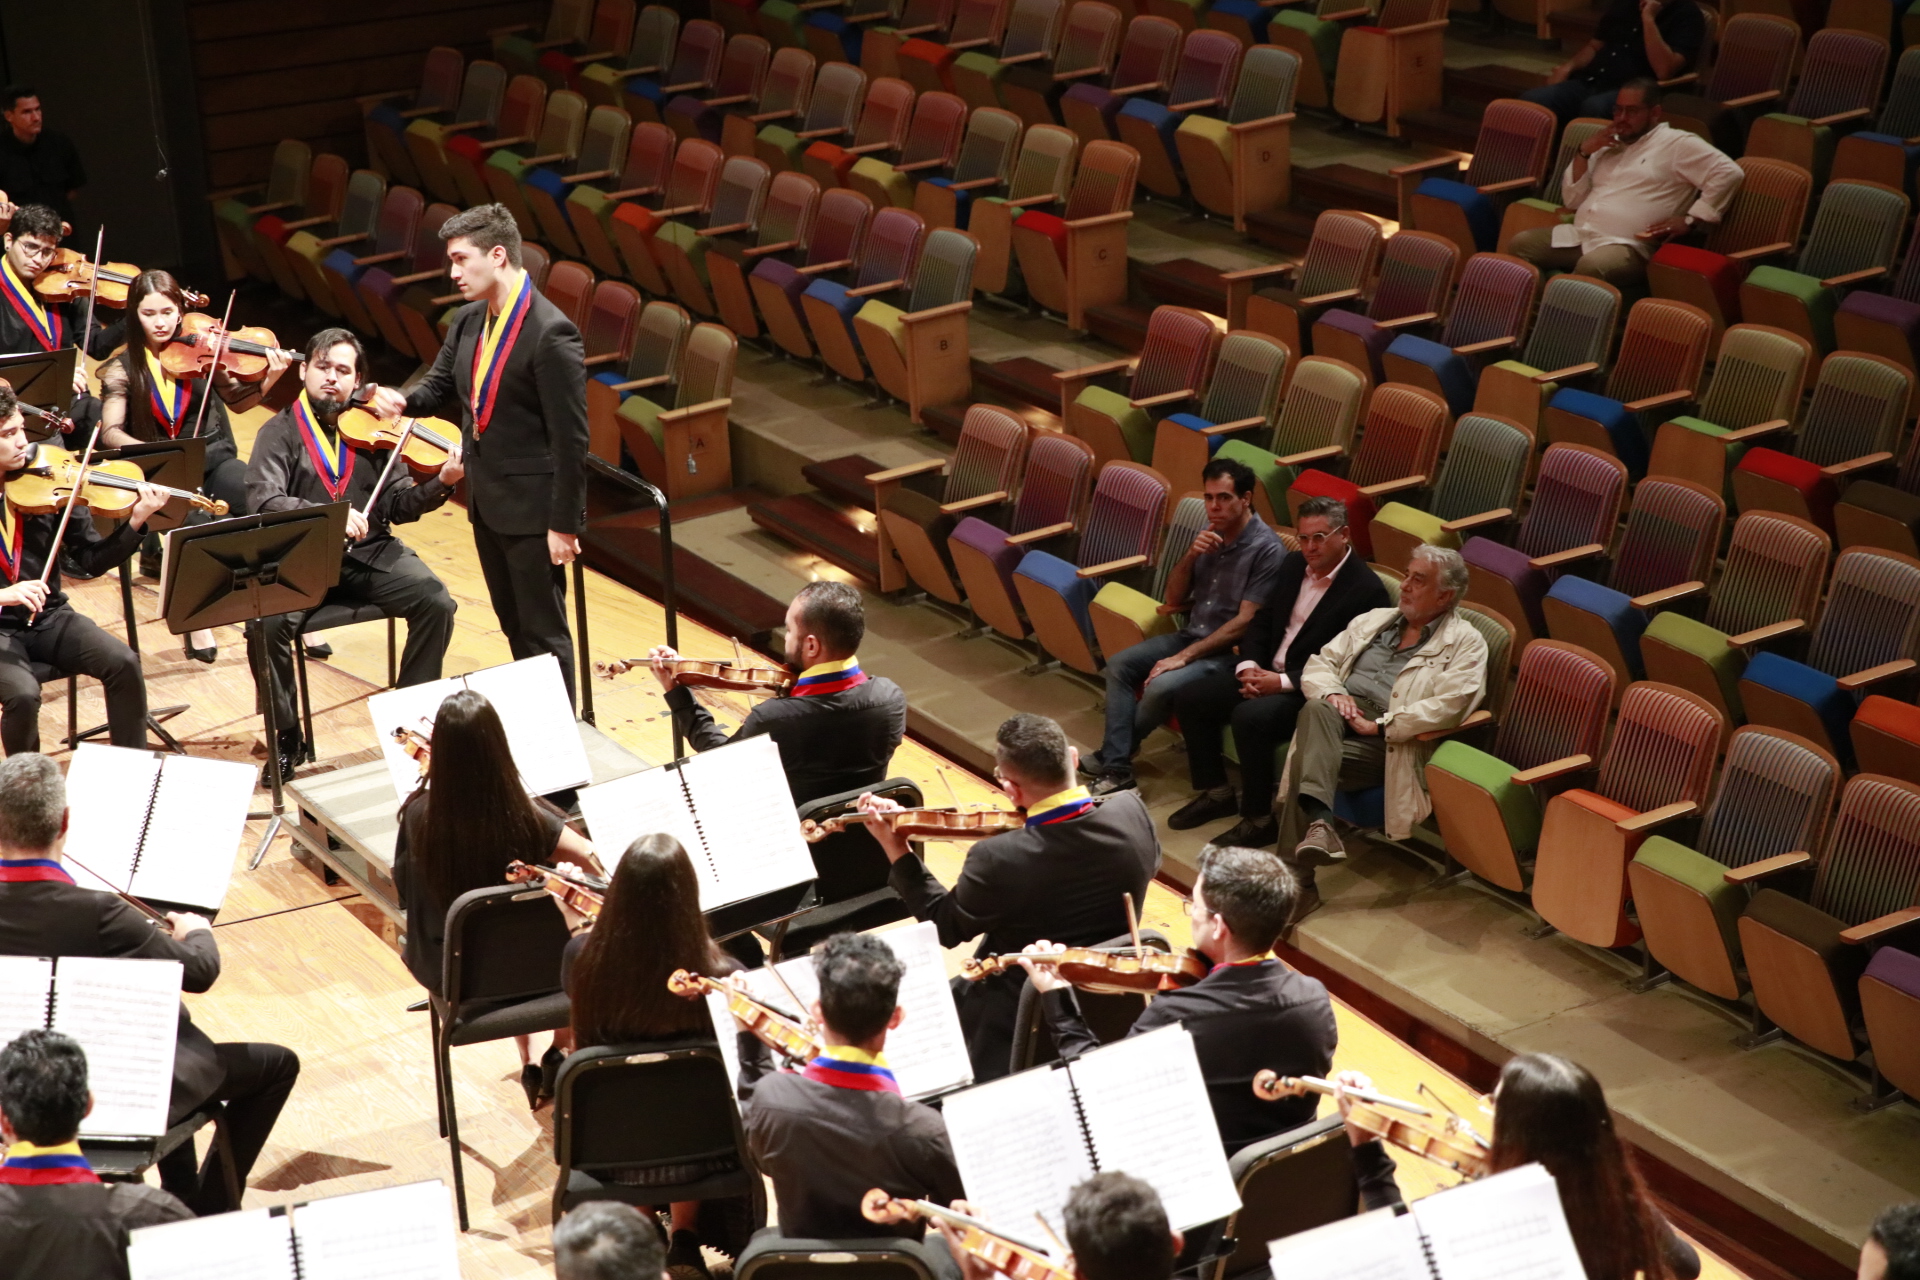 Orquesta Sinfonica Simon Bolivar De Venezuela Muestra A Placido Domingo (1)